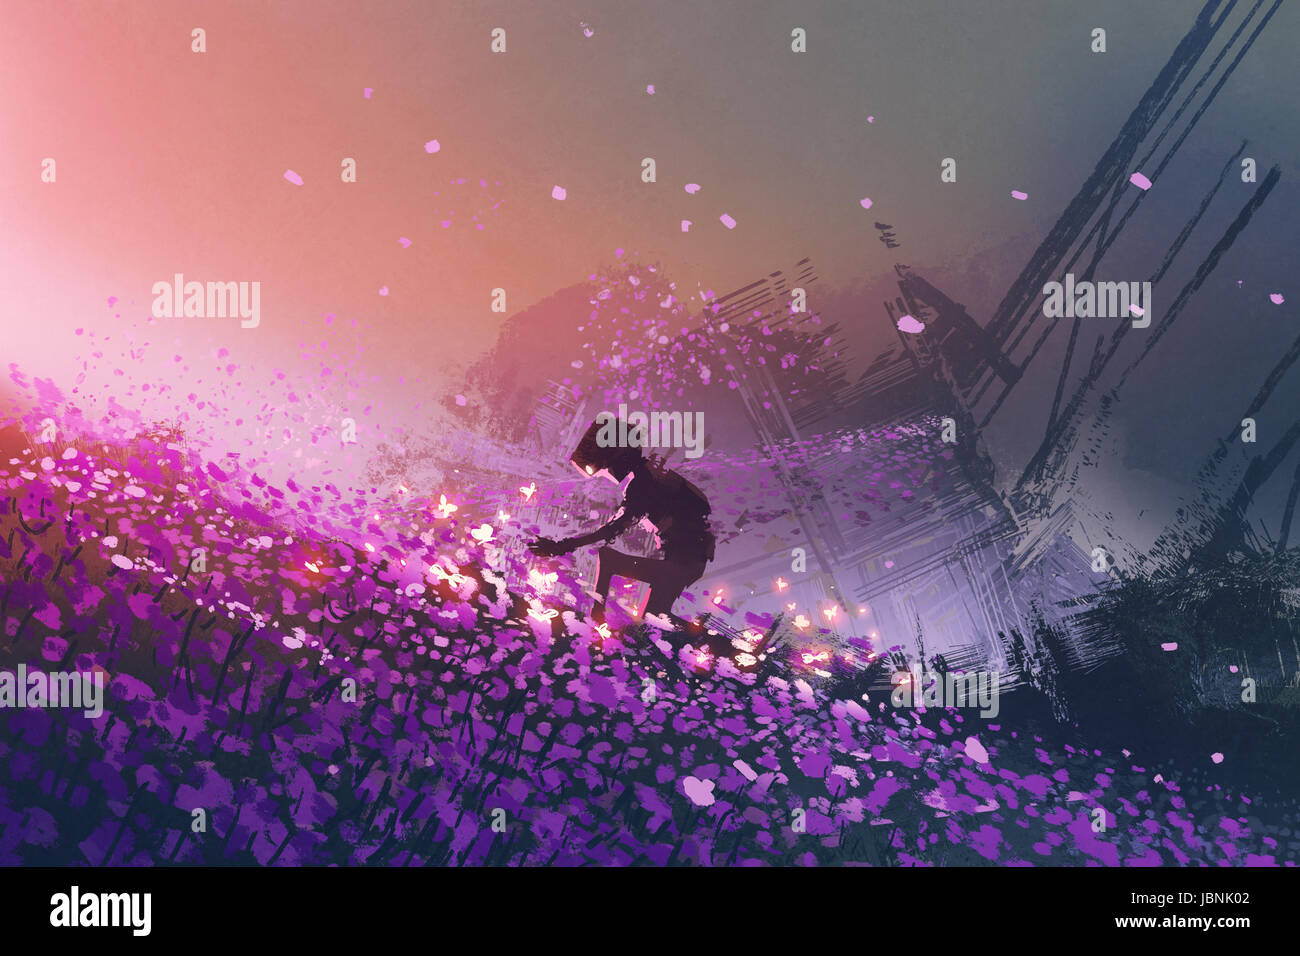 Il robot seduto sul campo viola giocando con farfalle incandescente, arte digitale stile, illustrazione pittura Foto Stock